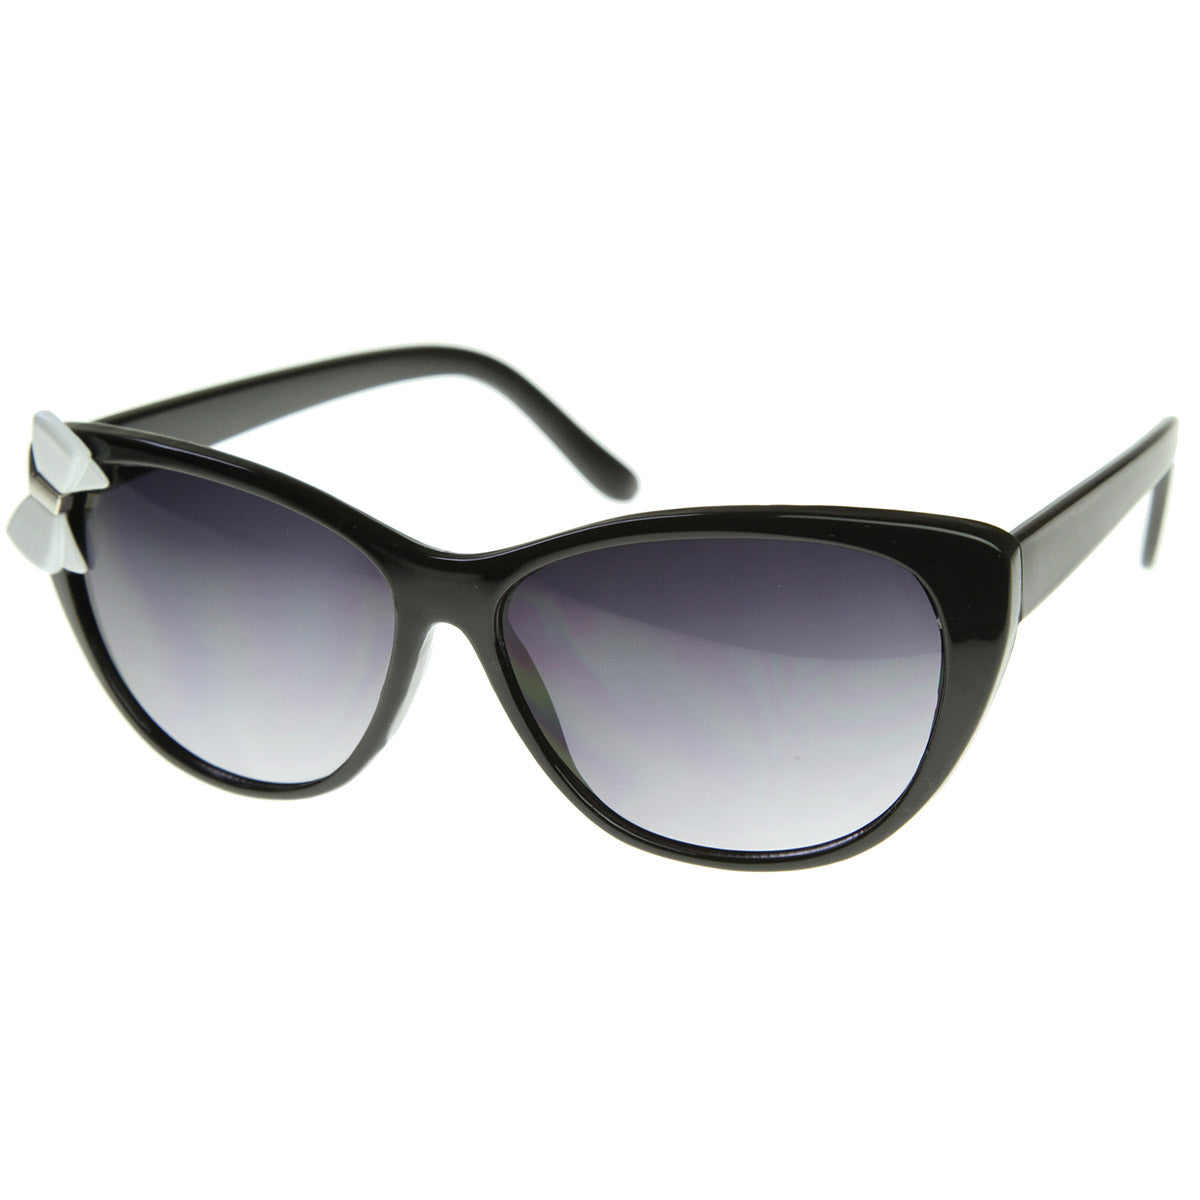 Cateye Style Bow Tie Womens Fashion Cat Eye Sunglasses - sunglass.la